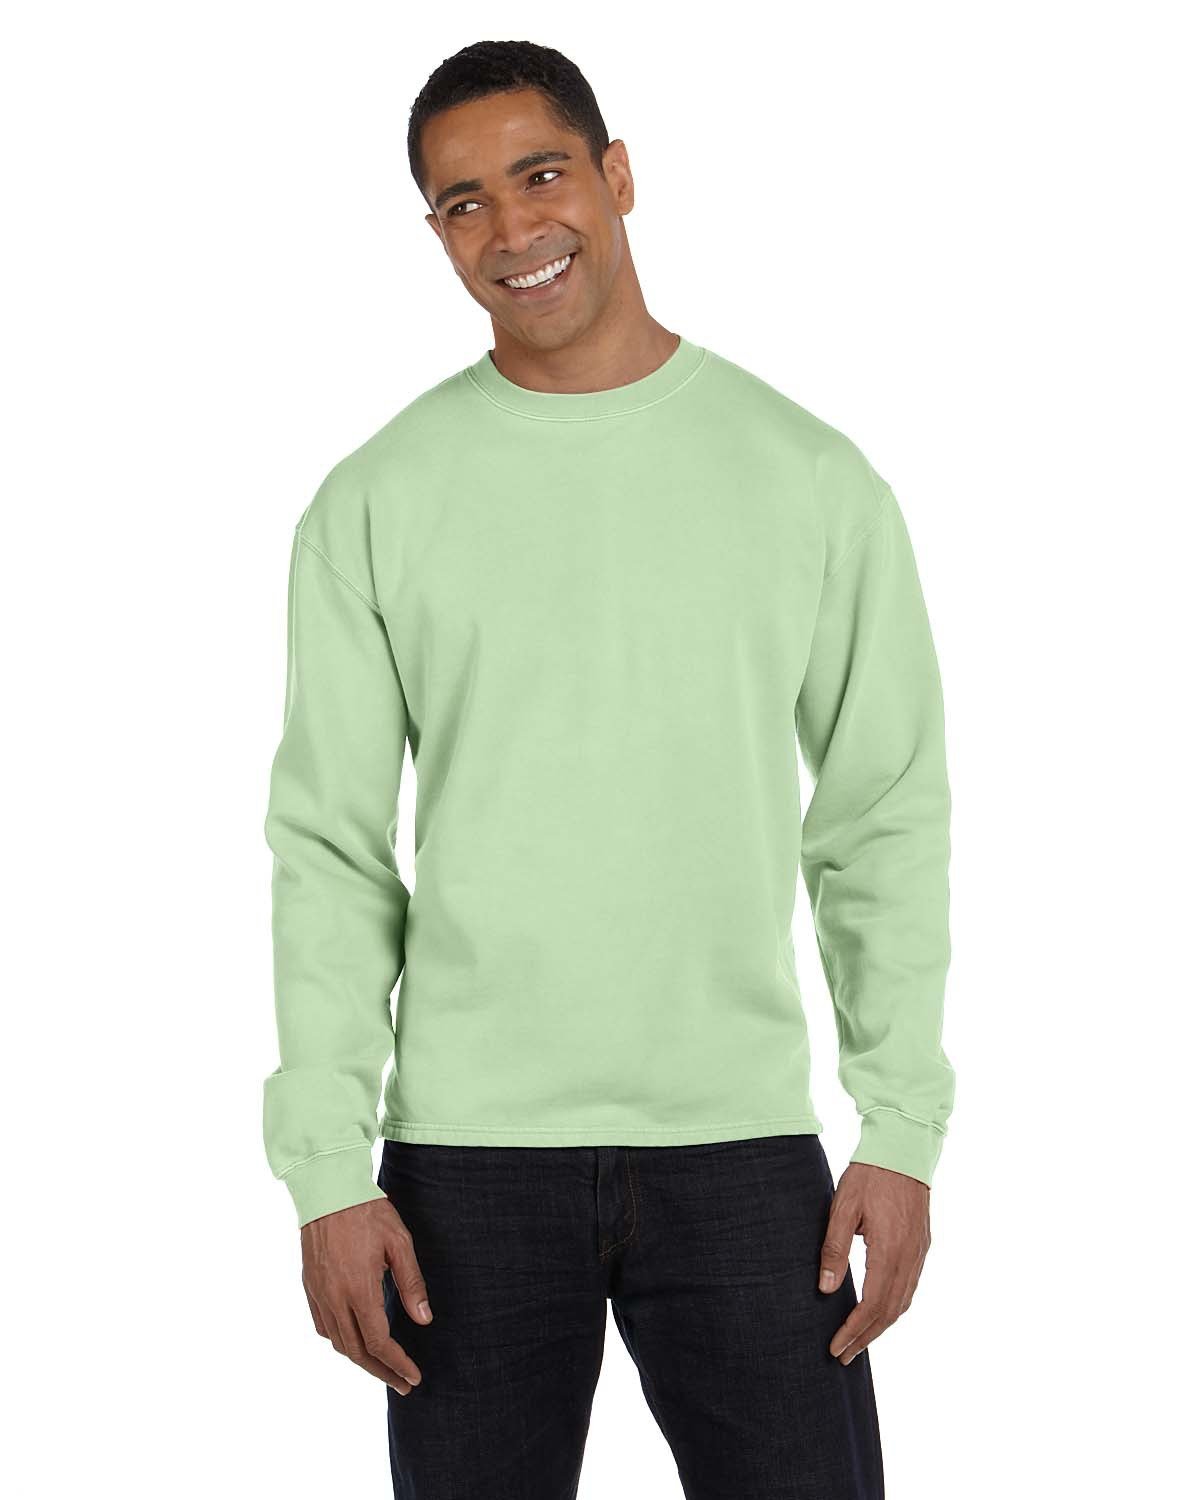 authentic pigment boxy crew sweatshirt